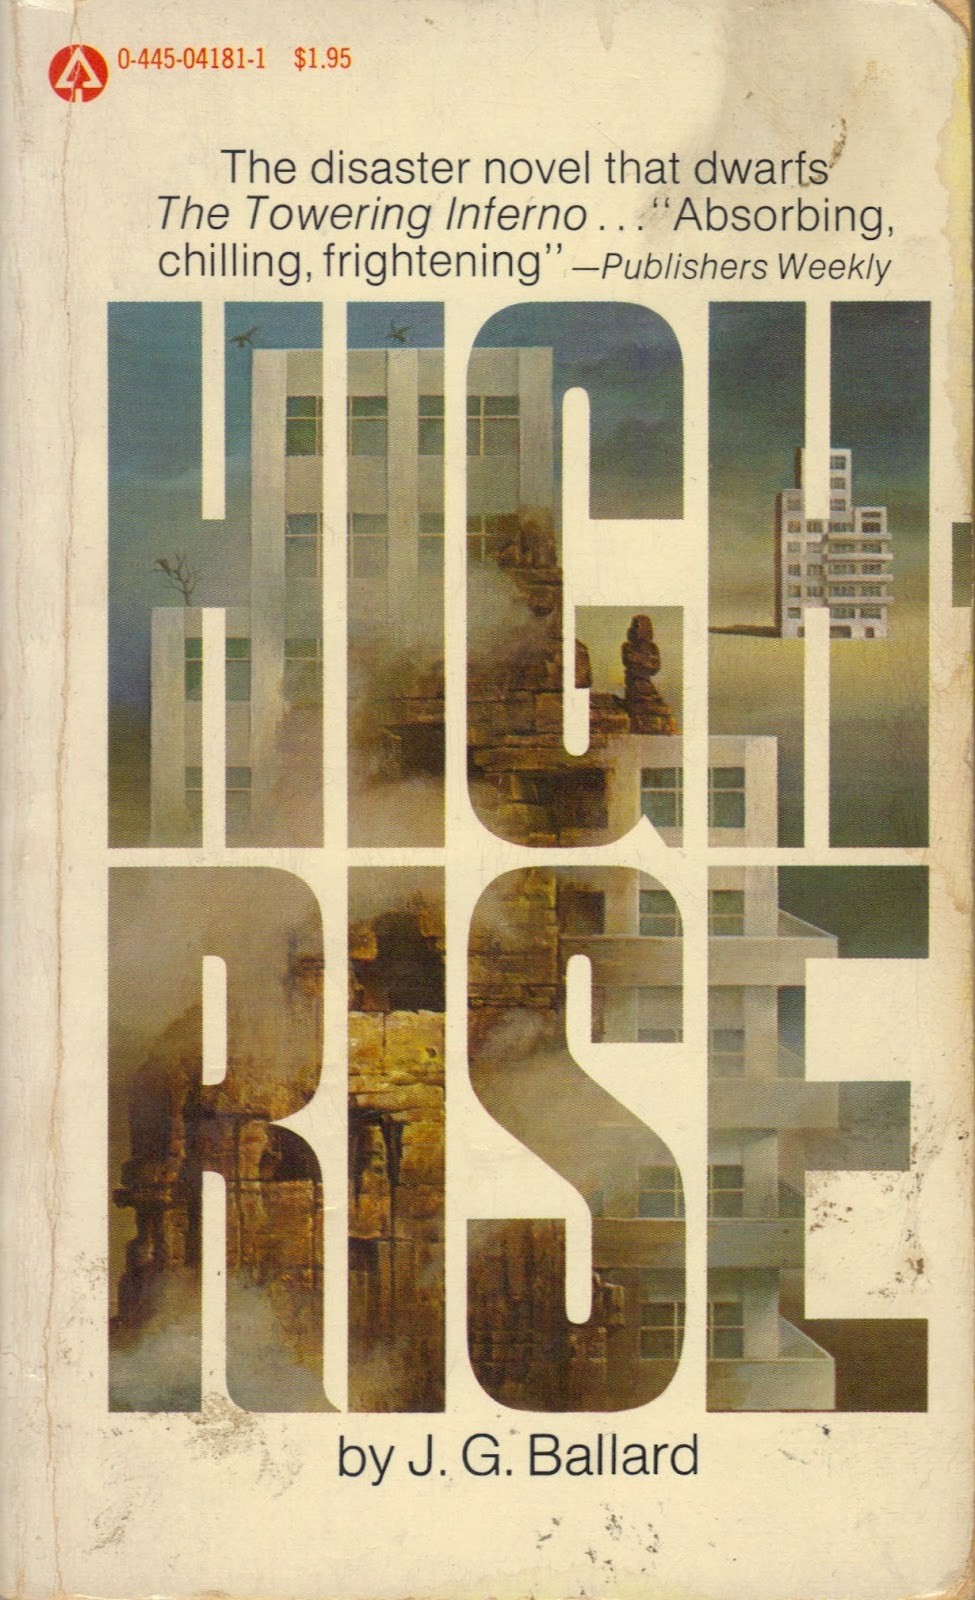 BOOK CLUB: HIGH-RISE